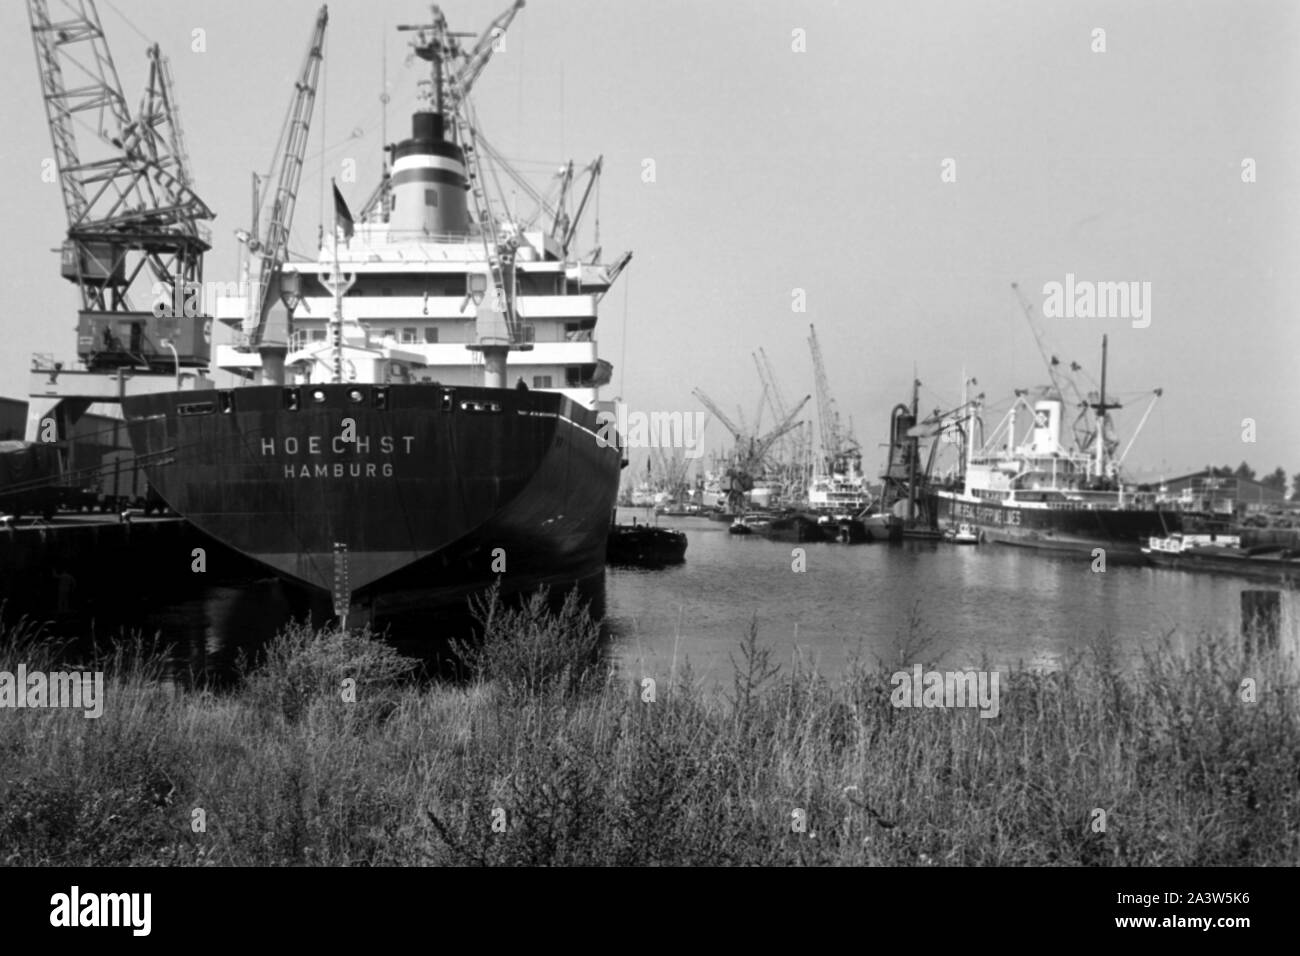 Semicontainerschiff 'Hoechst' aus Hamburg im Hafen von Rotterdam, Niederlande 1971. Halb Containerschiff "Hoechst" aus Hamburg am Hafen Rotterdam, die Niederlande 1971. Stockfoto